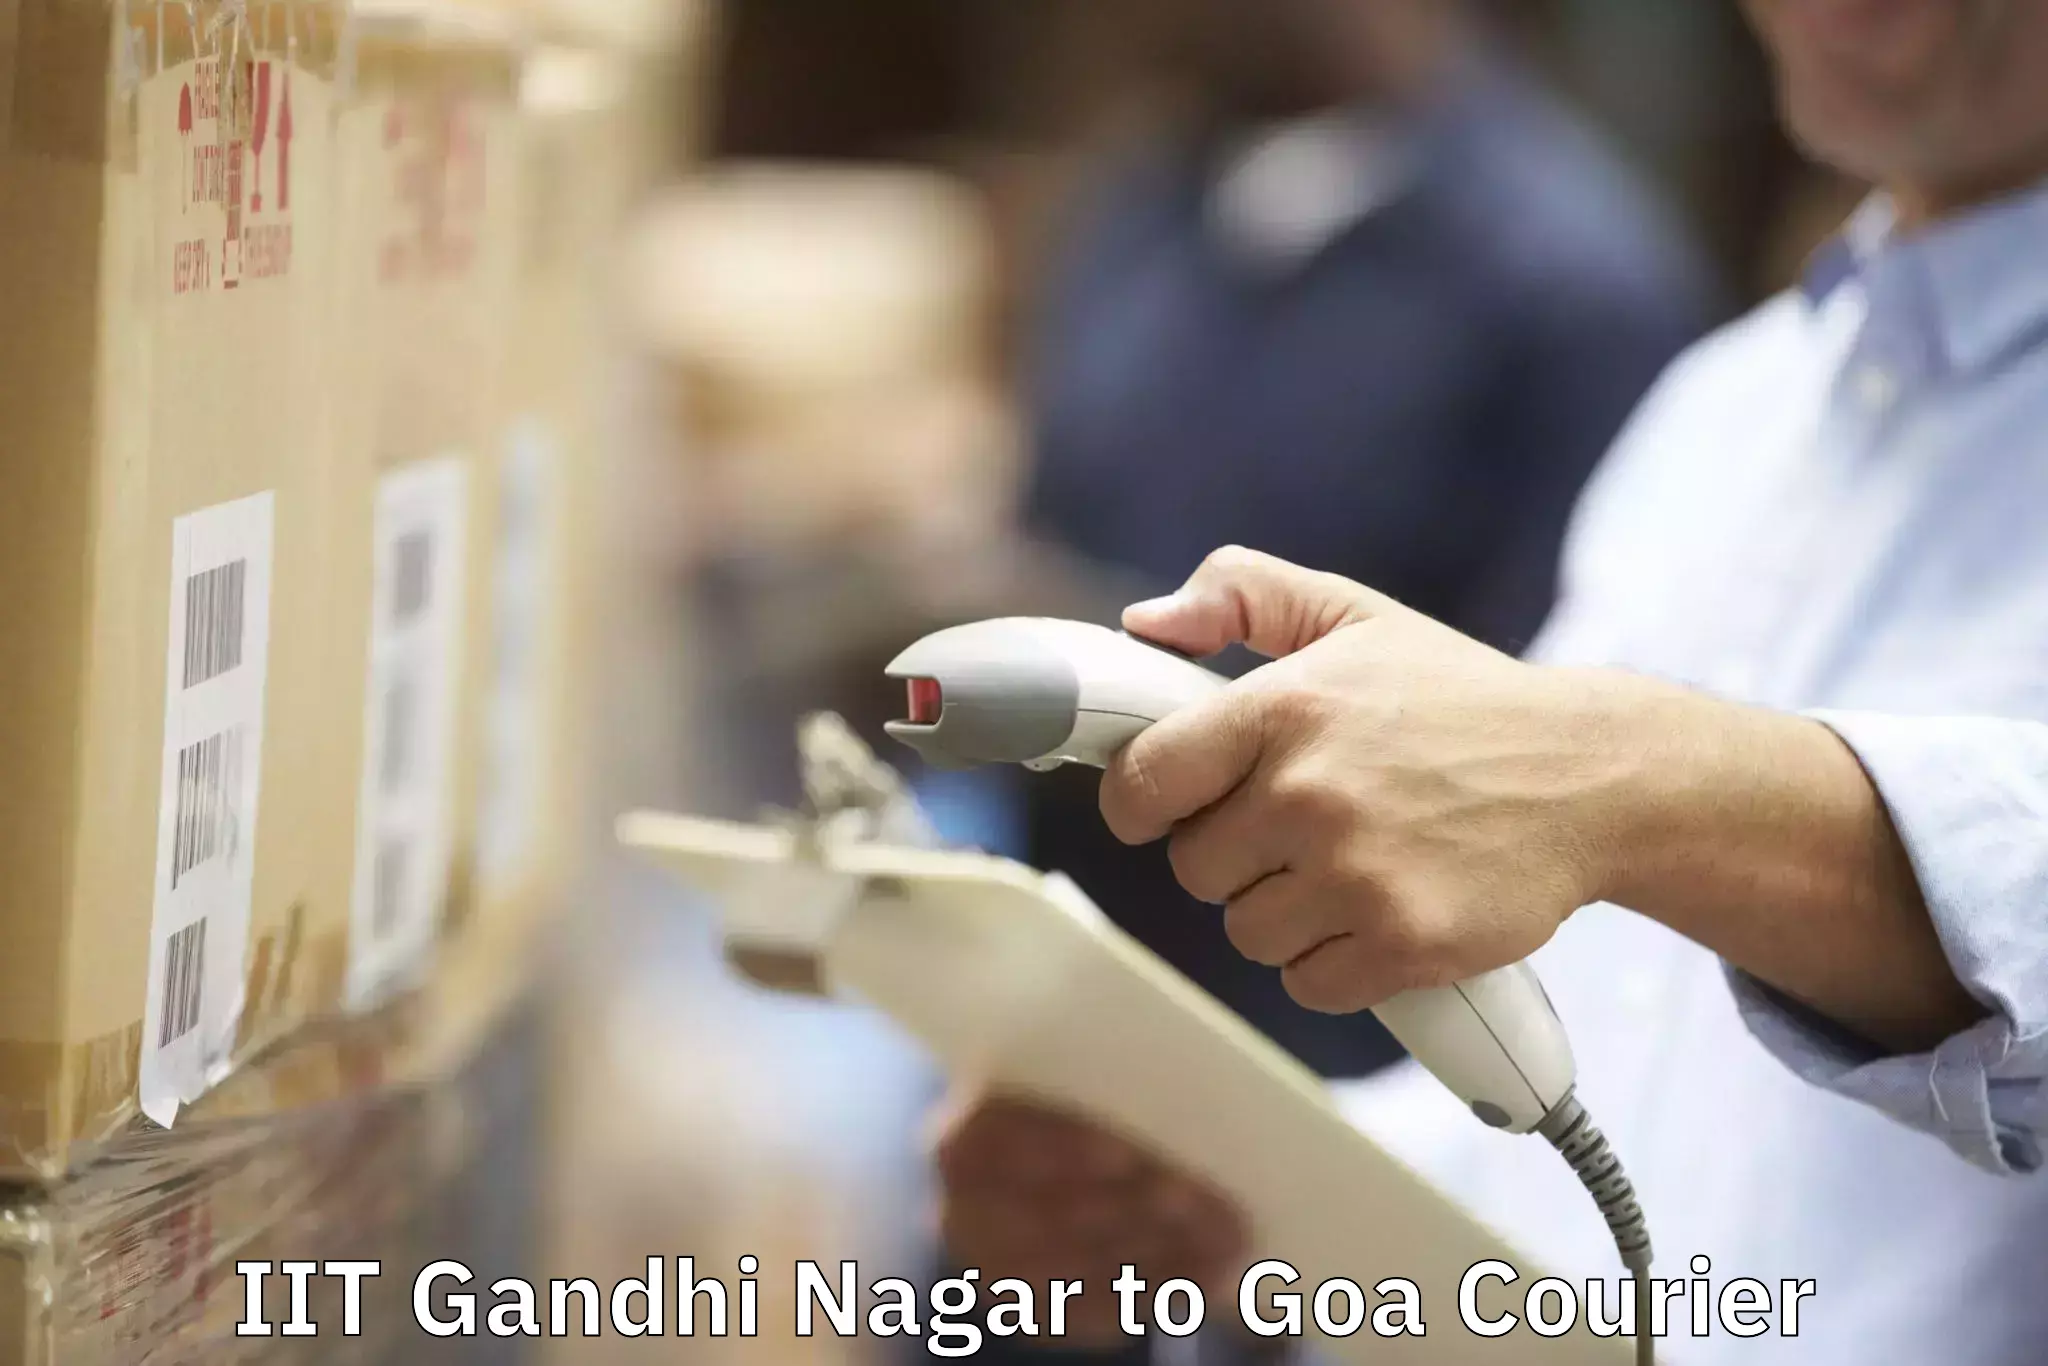 Furniture moving services IIT Gandhi Nagar to Goa University